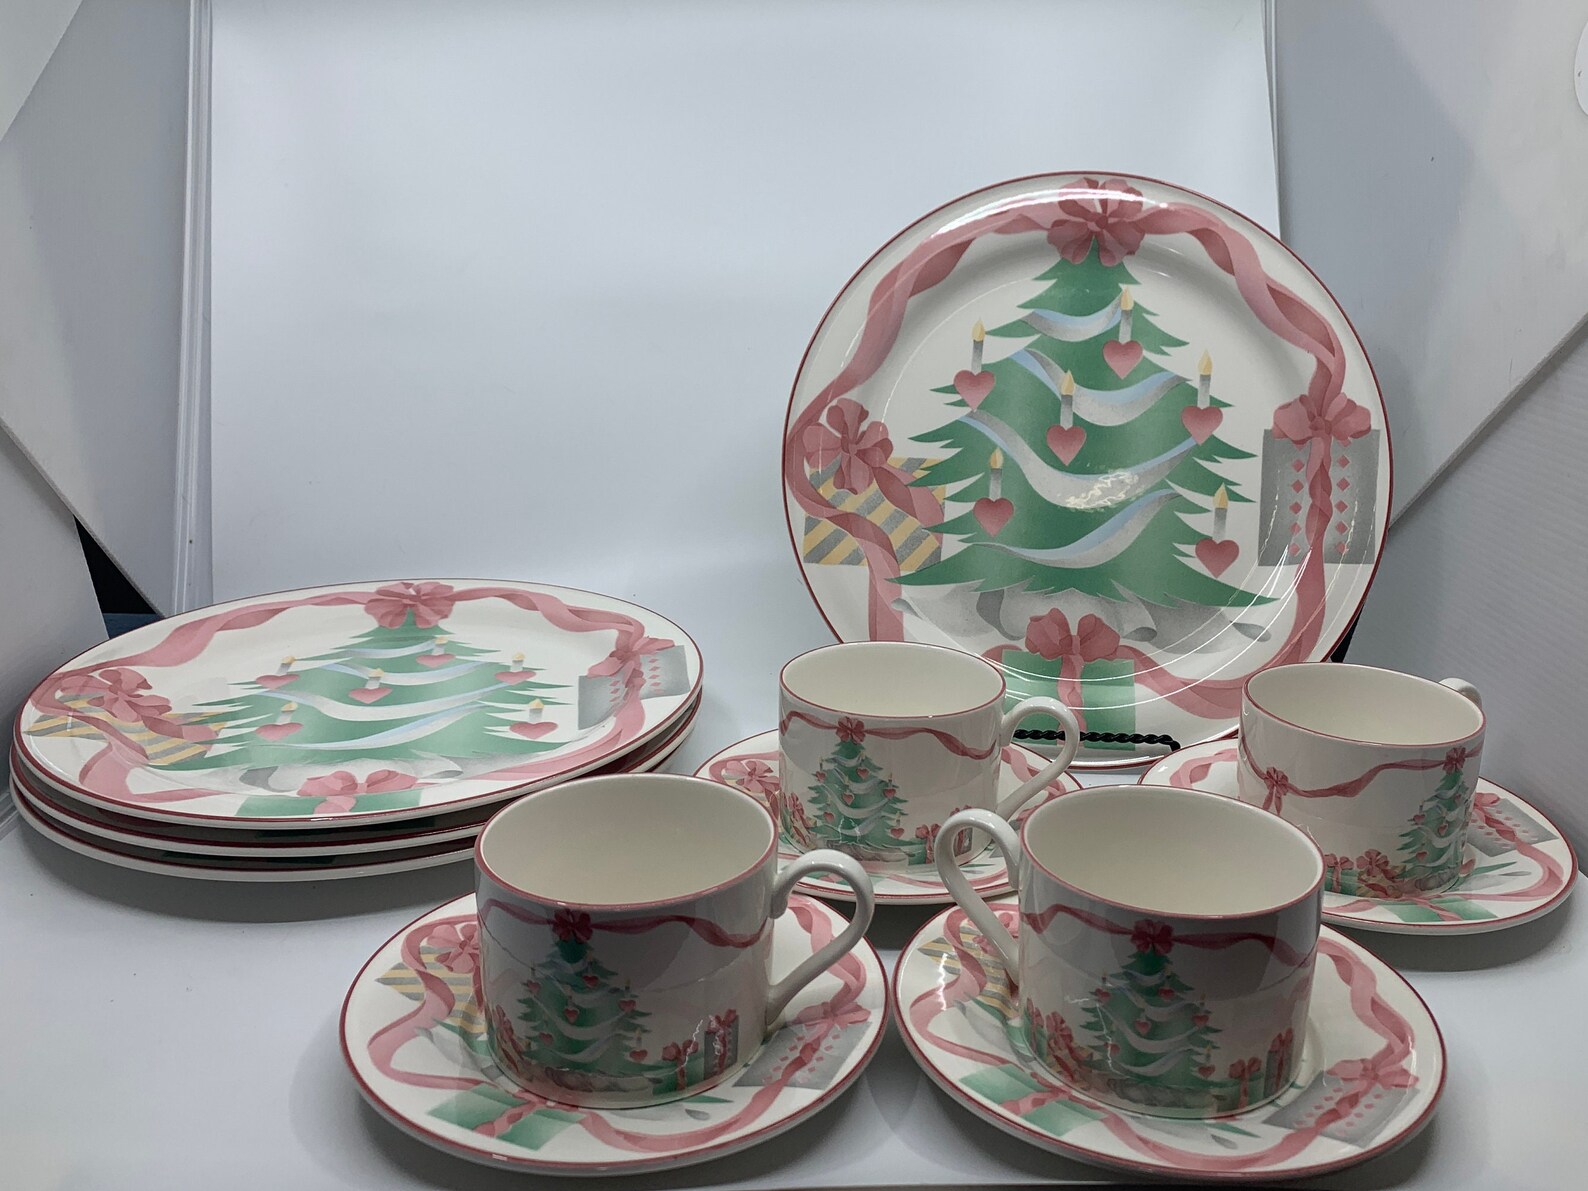 Vintage Christmas Tree Dinnerware Sets